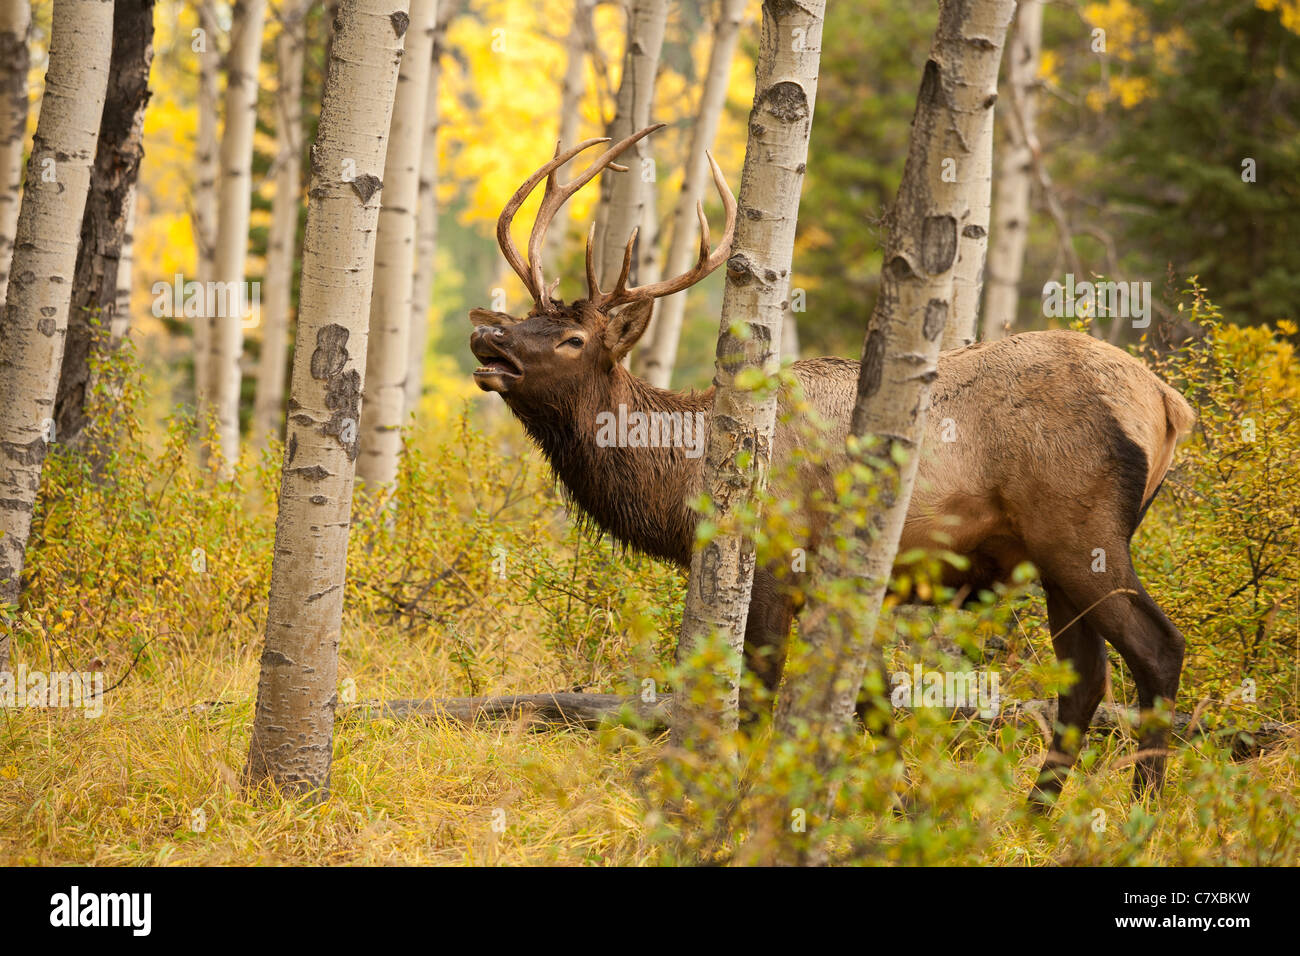 Les jeunes mâles en brames tremblaies pendant le rut d'automne annuel-Jasper National Park, Alberta, Canada. Banque D'Images